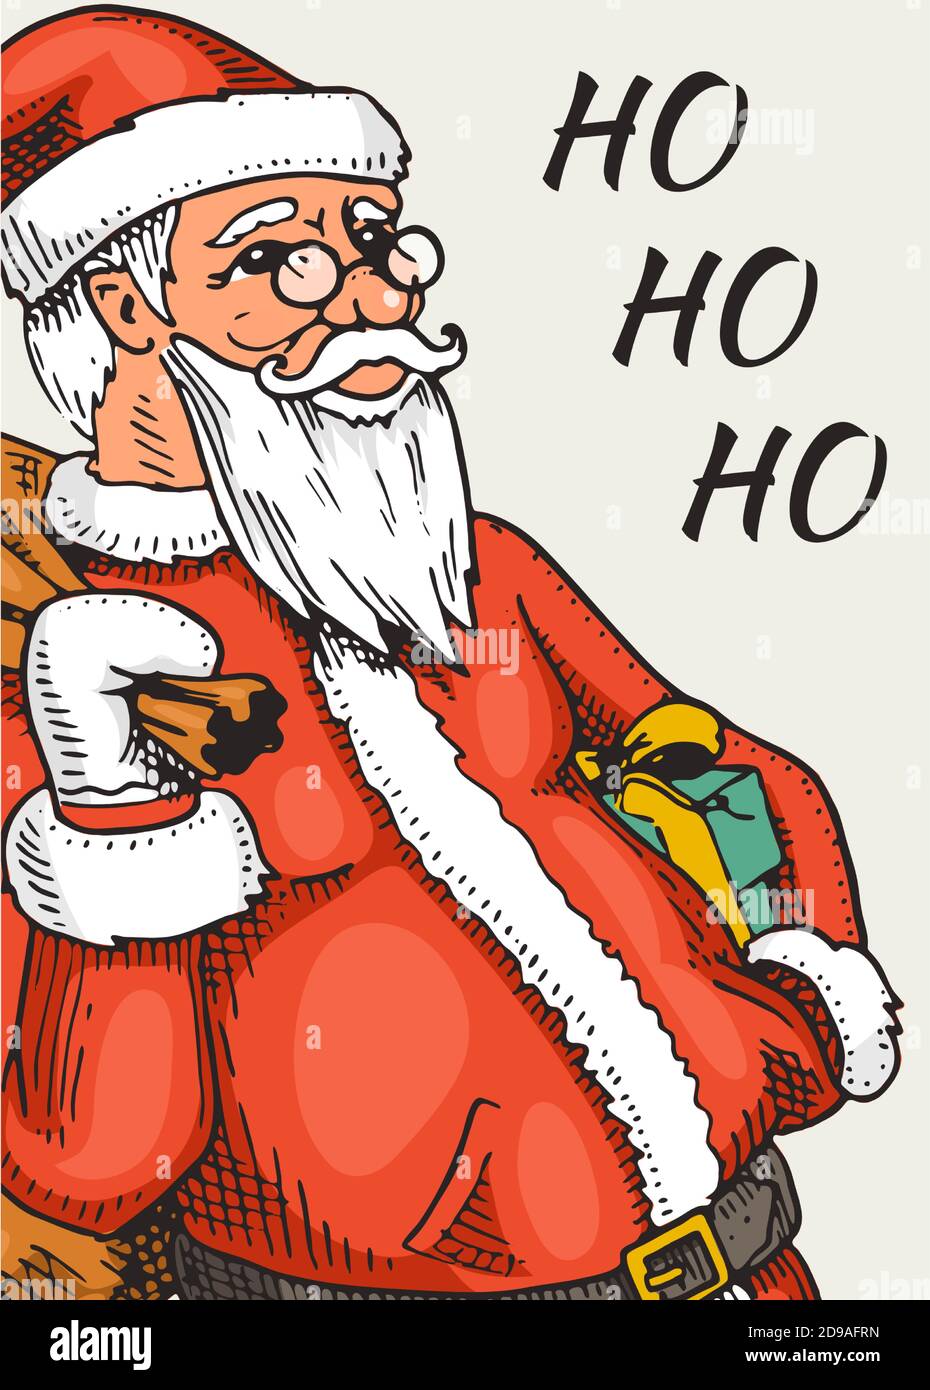 Frohe Weihnachten Banner. Sticky-Label für Neujahr. Poster-Vorlage. Father Frost oder Santa Claus für Vintage Aufkleber Flyer oder Etiketten. Handgezeichnet graviert Stock Vektor